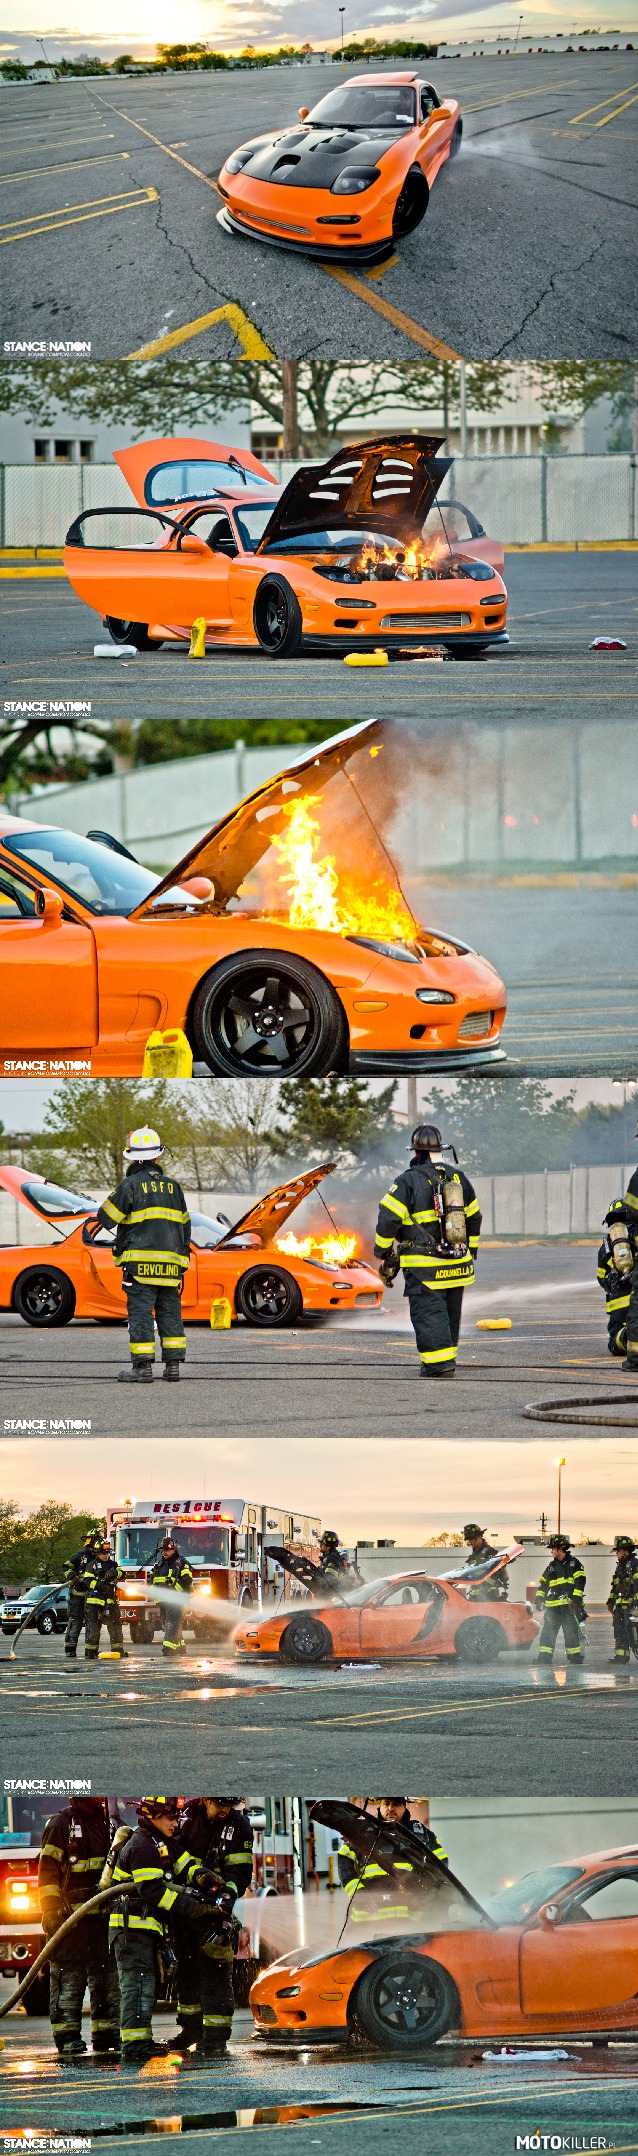 Smutna historia RX7 &#039;93 – &quot;Arvin nagle zatrzymał samochód i otworzył maskę tylko po to, żeby widzieć ogień. Zanim zdążył cokolwiek zrobić ogień spalił jego przewody olejowe. Kiedy olej rozlał się po całym silniku zaczął płonąć. Następnie ogień spalił pierścienie uszczelniające wtryskiwacze, które wypuściły uciśnione paliwo i spryskały płomień, co niestety uniemożliwiło jego kontrolę.

Arvin i jego przyjaciele próbowali wszystkiego, żeby powstrzymać ogień, ale nie mogli zapobiec jej spaleniu. Skończyli wzywając straż pożarną. Turbo i wiązki w silniku spalone, ogień rozprzestrzenił się na błotniku. To zniszczyło amortyzatory, spaliło hamulec główny i siłownik sprzęgła. Wszystkie przewody, mocowanie silnika, złączka intercoolera zostały stopione. Zanosiło się na rozprzestrzenienie pożaru w kabinie, ale wielkie brawa dla straży pożarnej.
Minusem straży pożarnej było to, że złamali otwarte drzwi i dosłownie wyrwali wnętrze. Potłukli również przednią szybę. &quot;To był najsmutniejszy dzień&quot; powiedział nam Arvin. Nadal jest bardzo wdzięczny straży pożarnej.&quot;

Przetłumaczyłem tekst (kaleko trochę). Nauka angielskiego i przyjemność w jednym. 